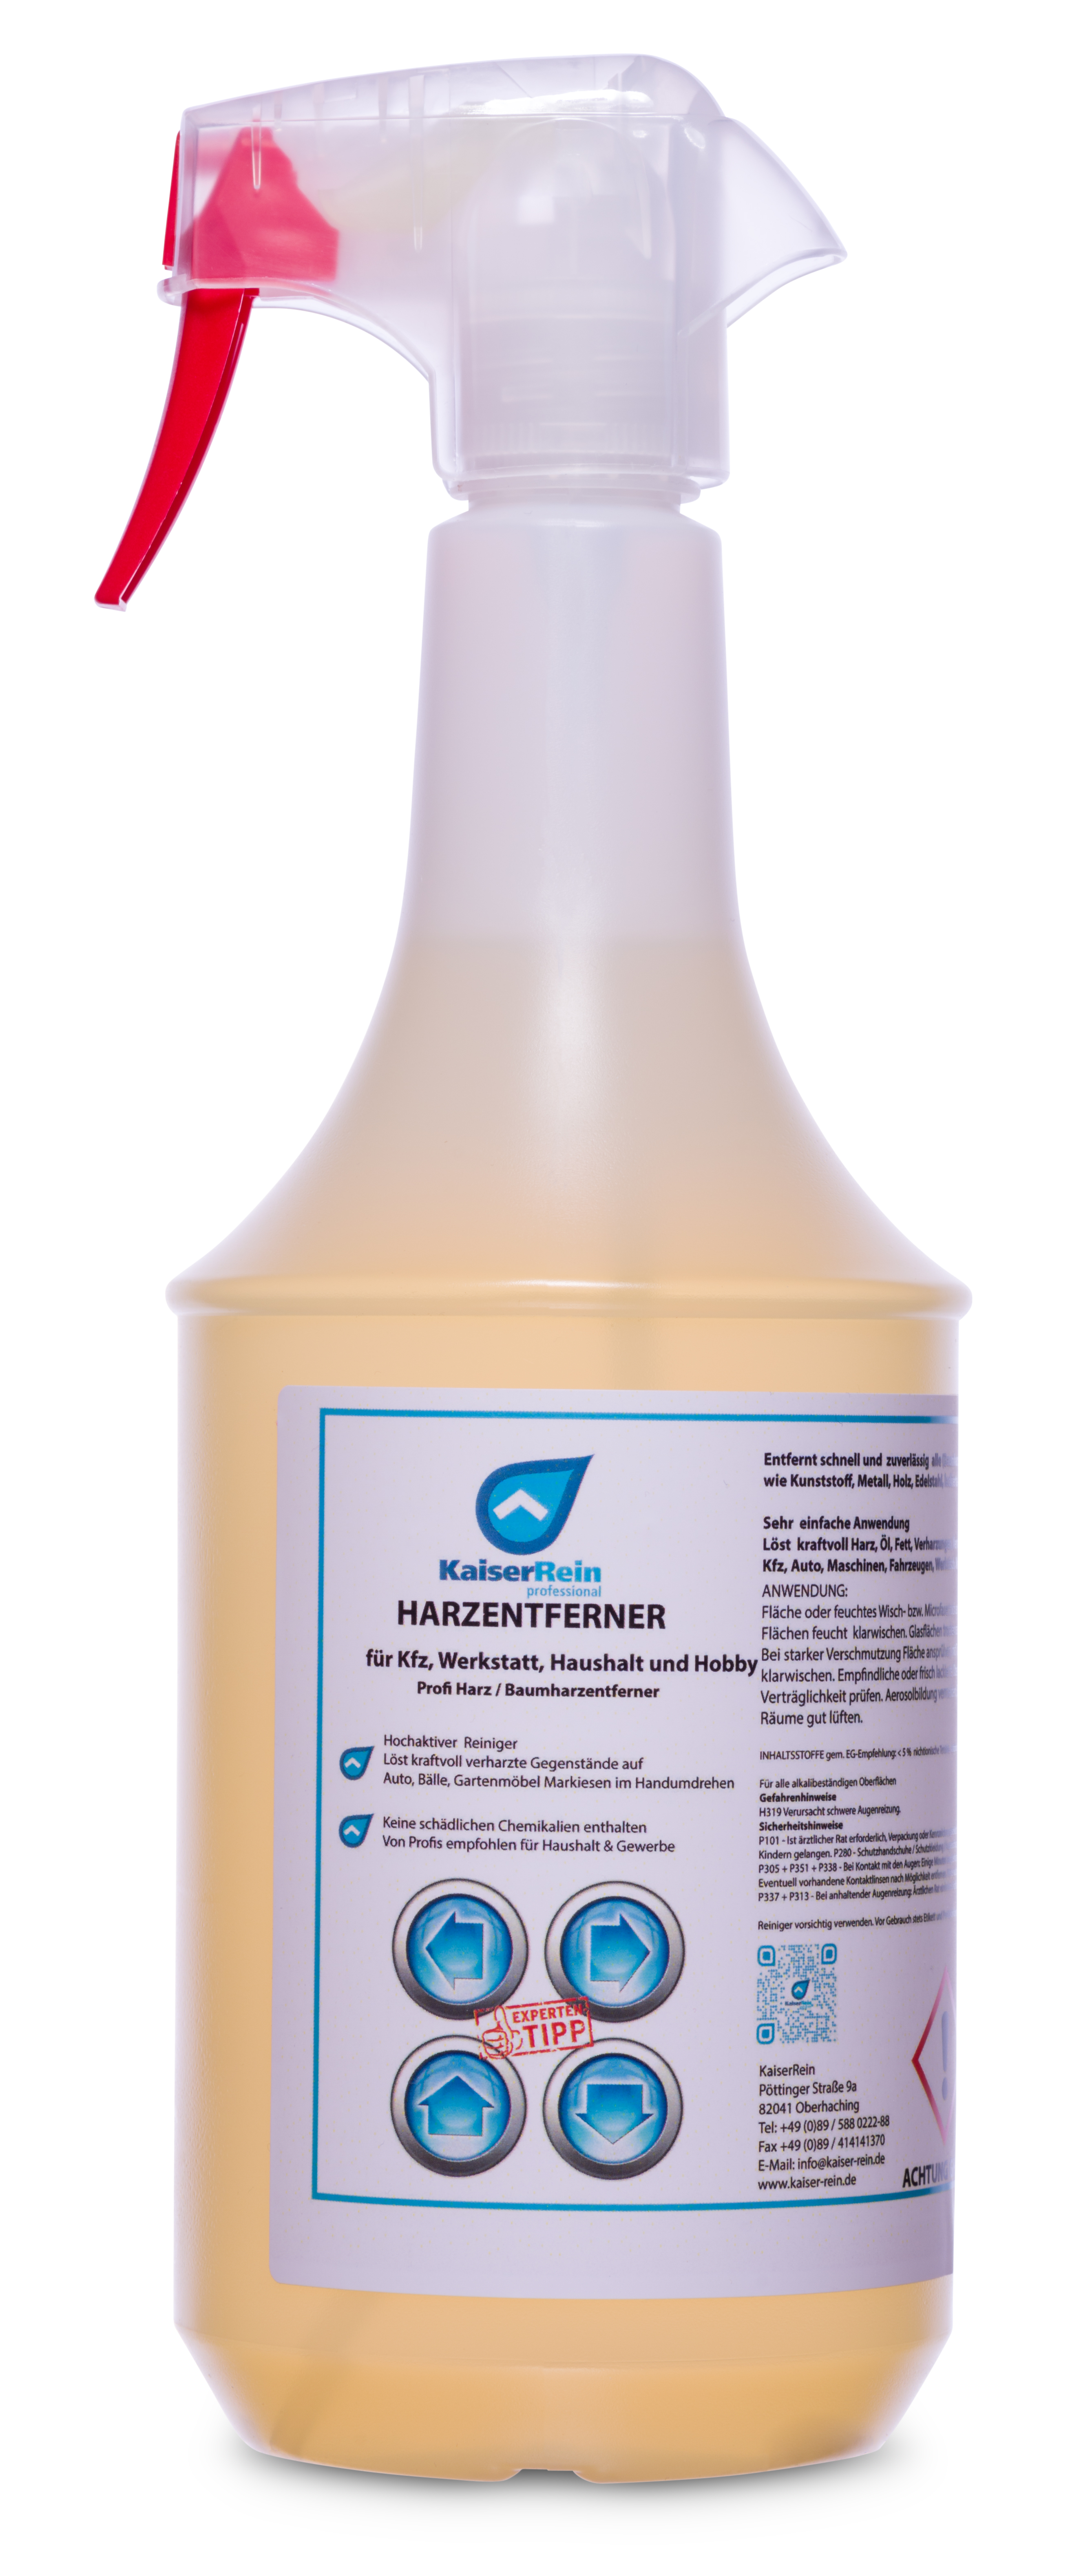 Harzentferner 1 L Spray für Kfz, Werkstat, Haushalt und Hobby Profi Harz / Baumharzentferner